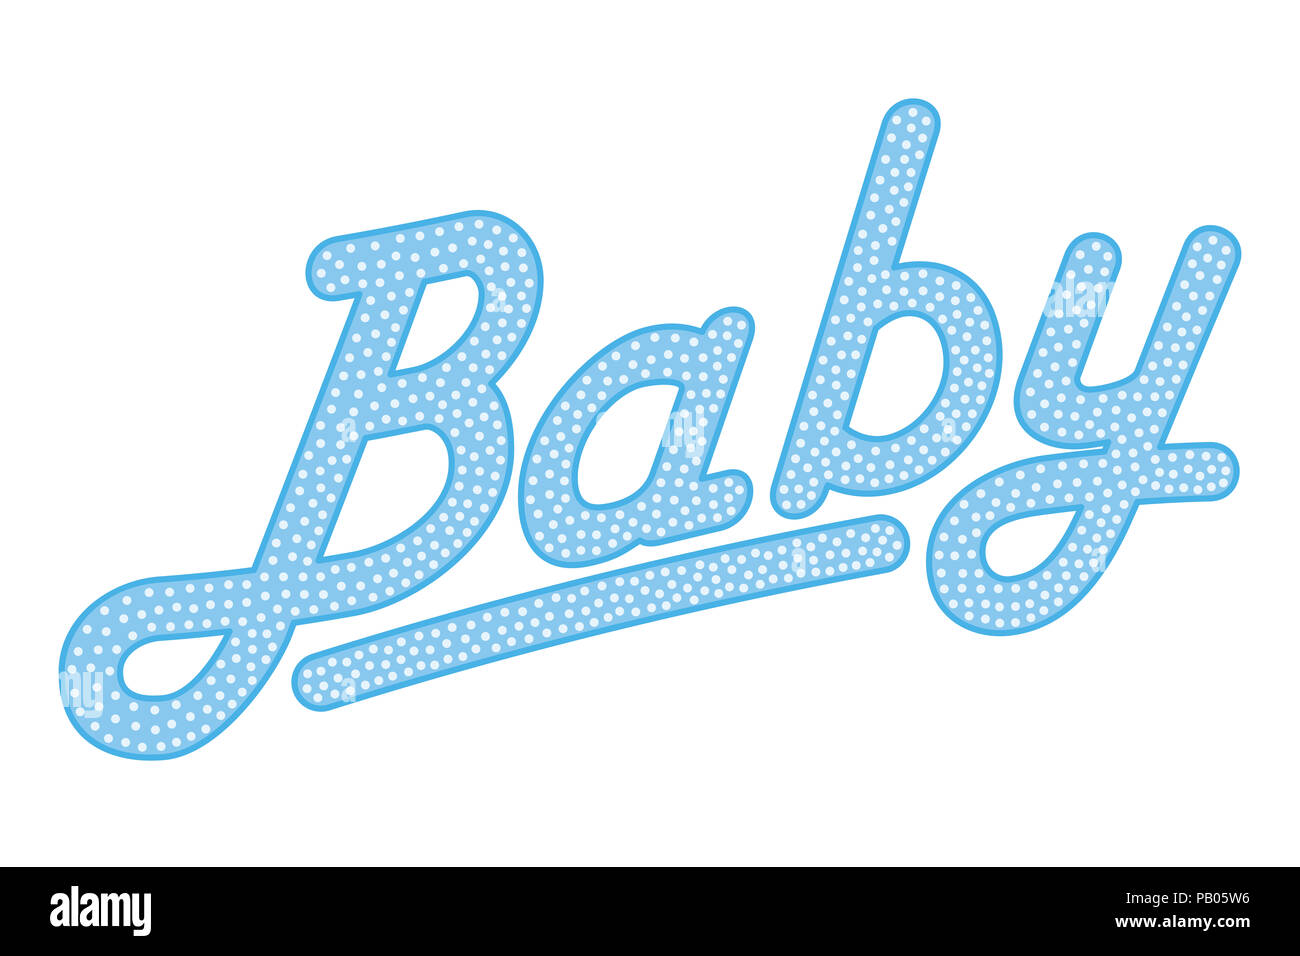 Lettrage cursives du mot bébé, de couleur bleu et avec des petits points. En pointillés au hasard, l'écriture en italique. Isolées. Illustration sur fond blanc. Banque D'Images